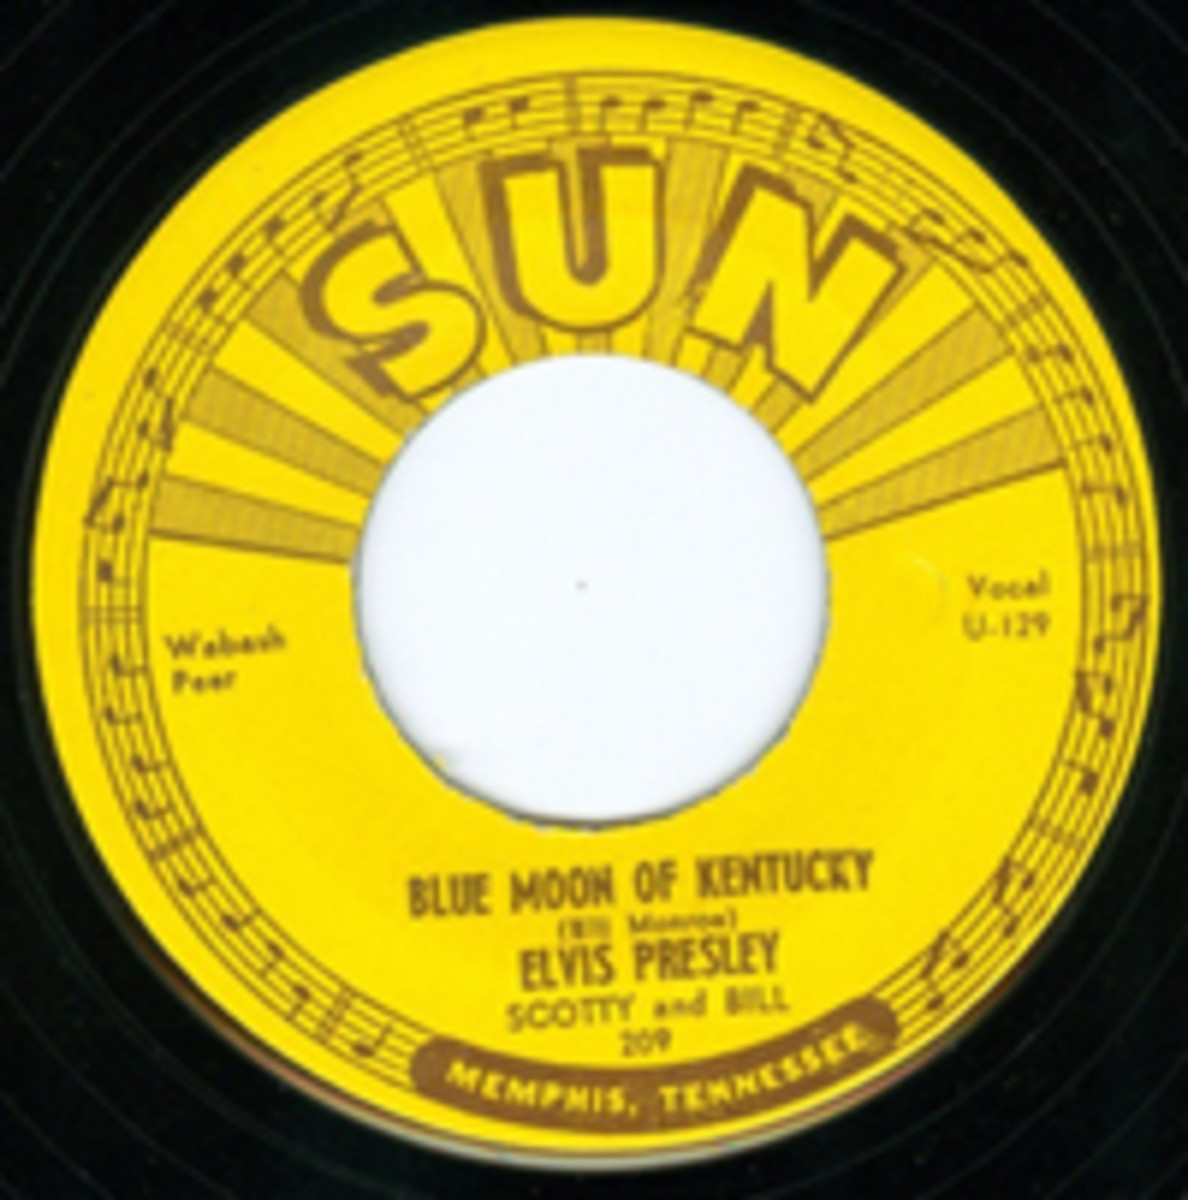 Elvis Presley Sun 45